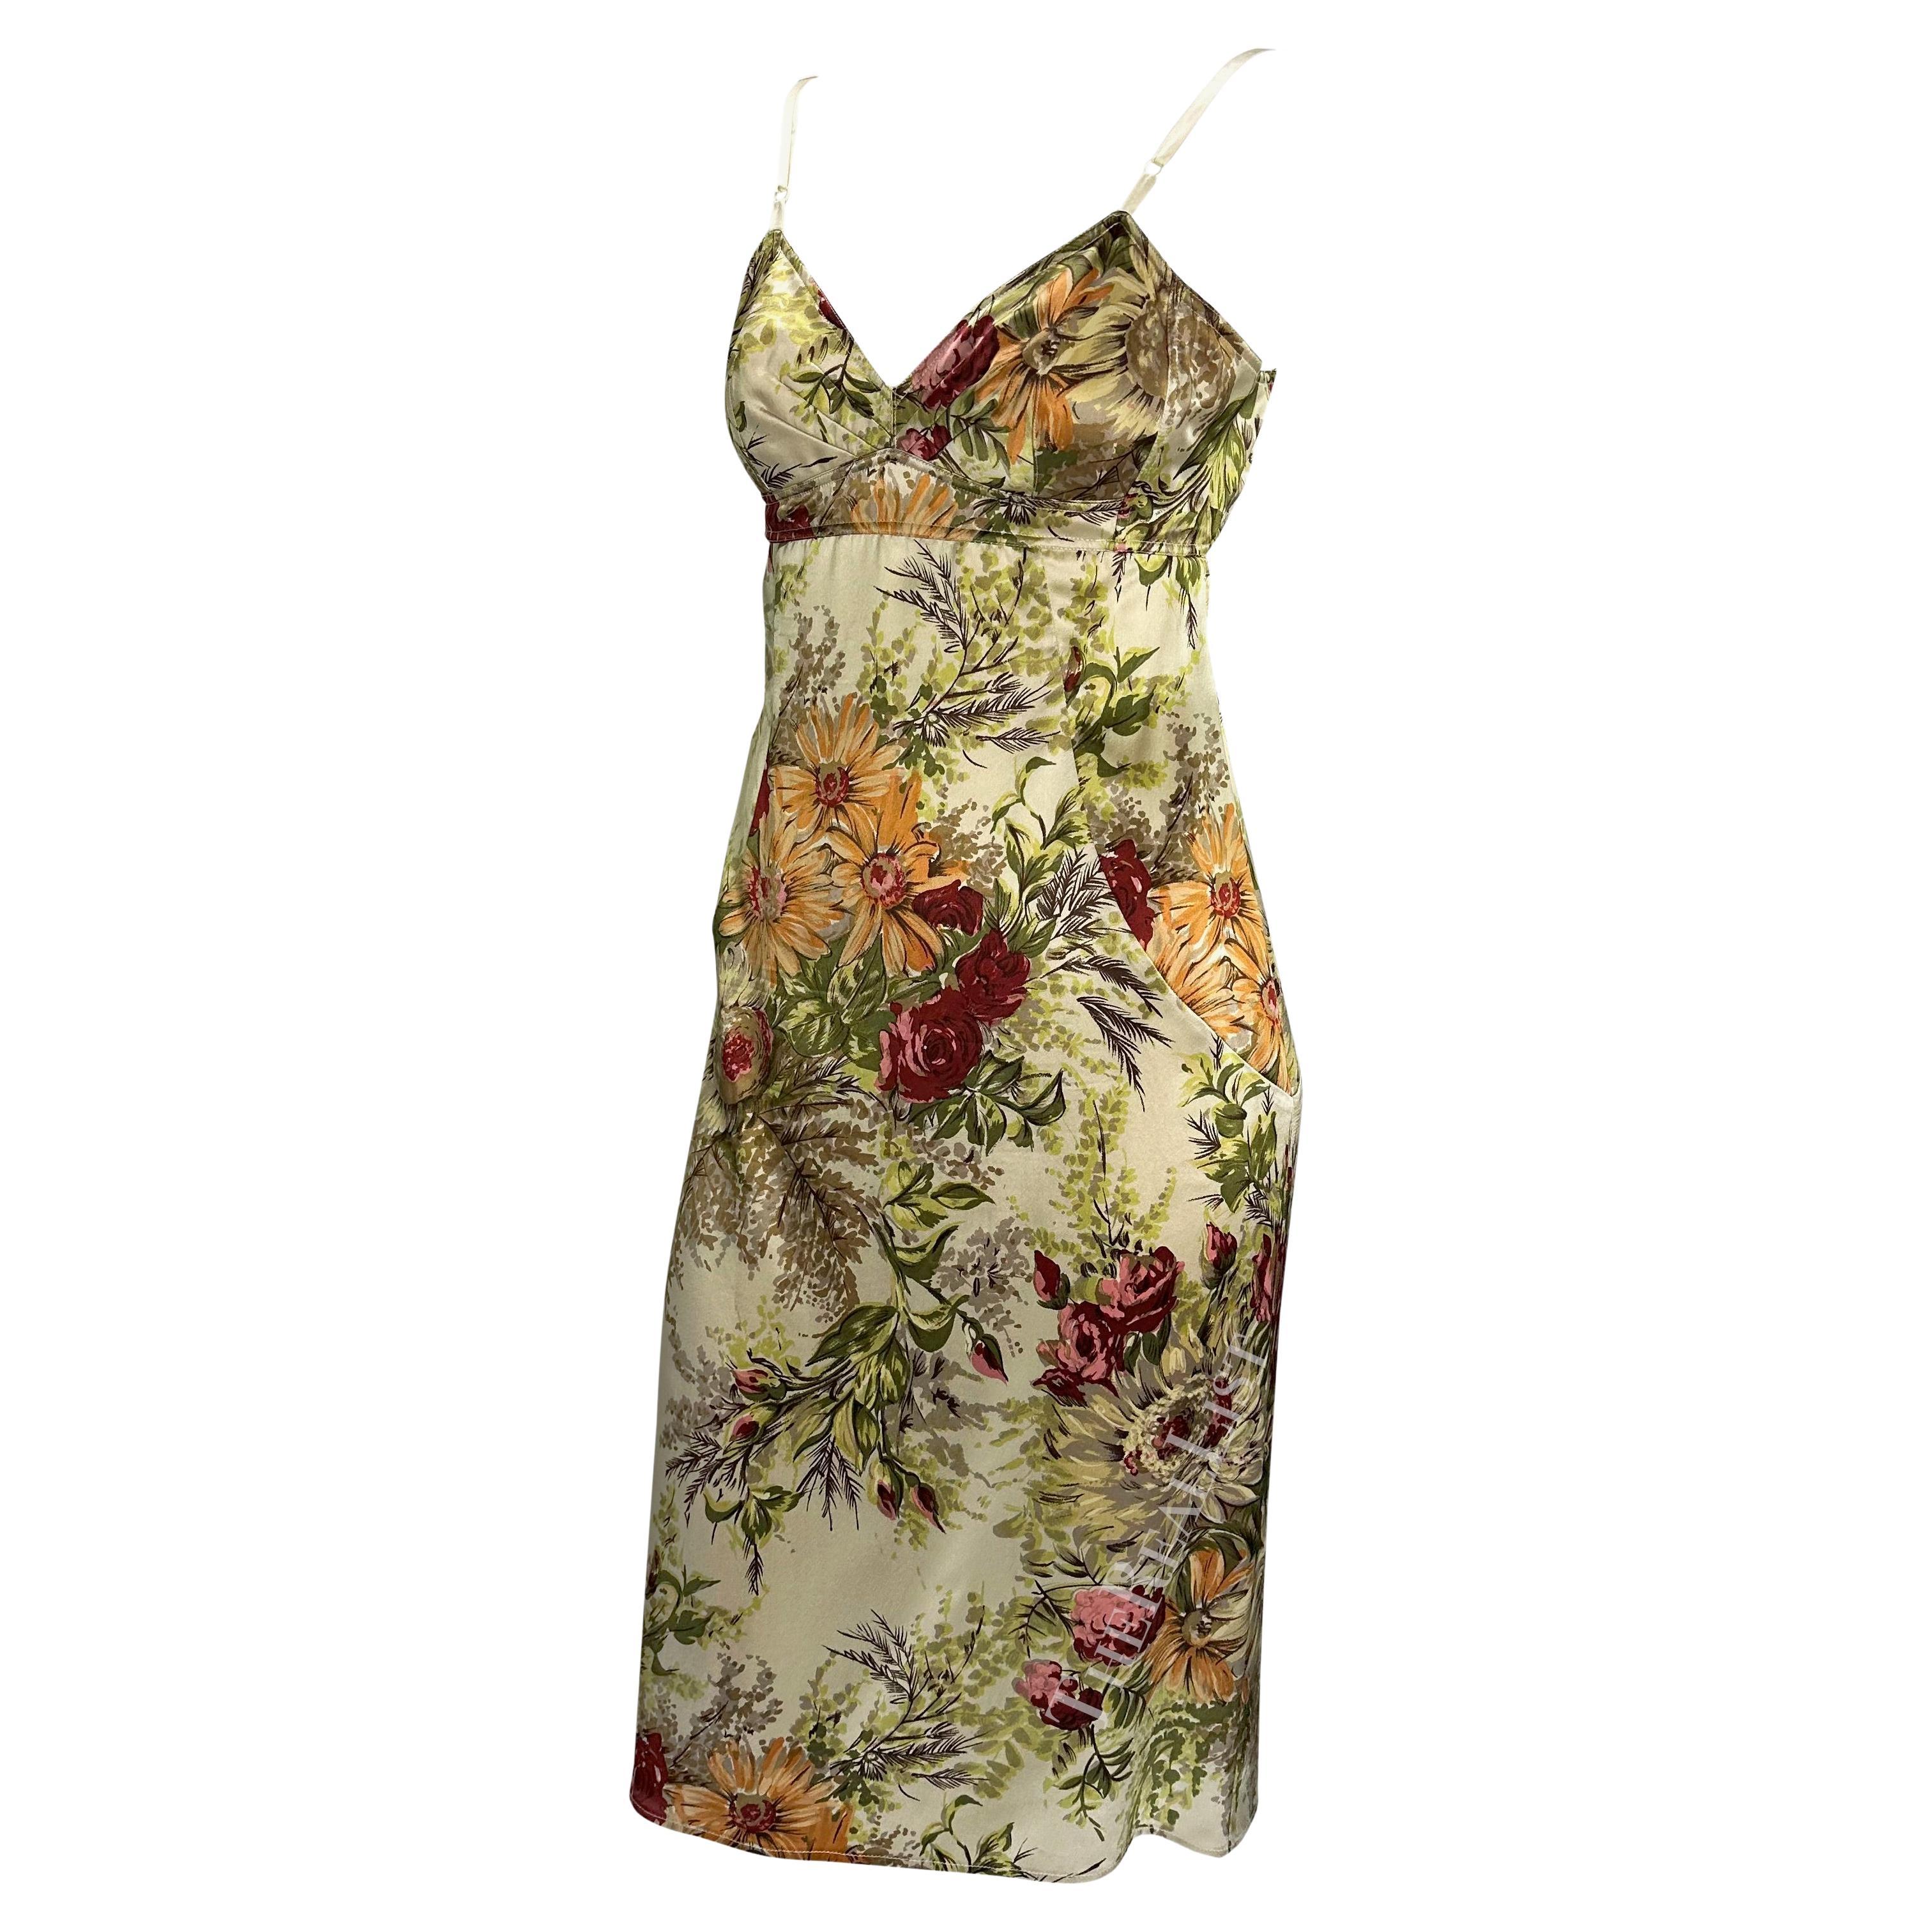 Wir präsentieren ein atemberaubendes geblümtes Seidenkleid von Dolce & Gabbana. Dieses Kleid aus der Frühjahr/Sommer-Kollektion 1997 zeichnet sich durch ein kühnes Blumenmuster und ein halb rückenfreies Design aus. Ergänzen Sie Ihre Sammlung mit